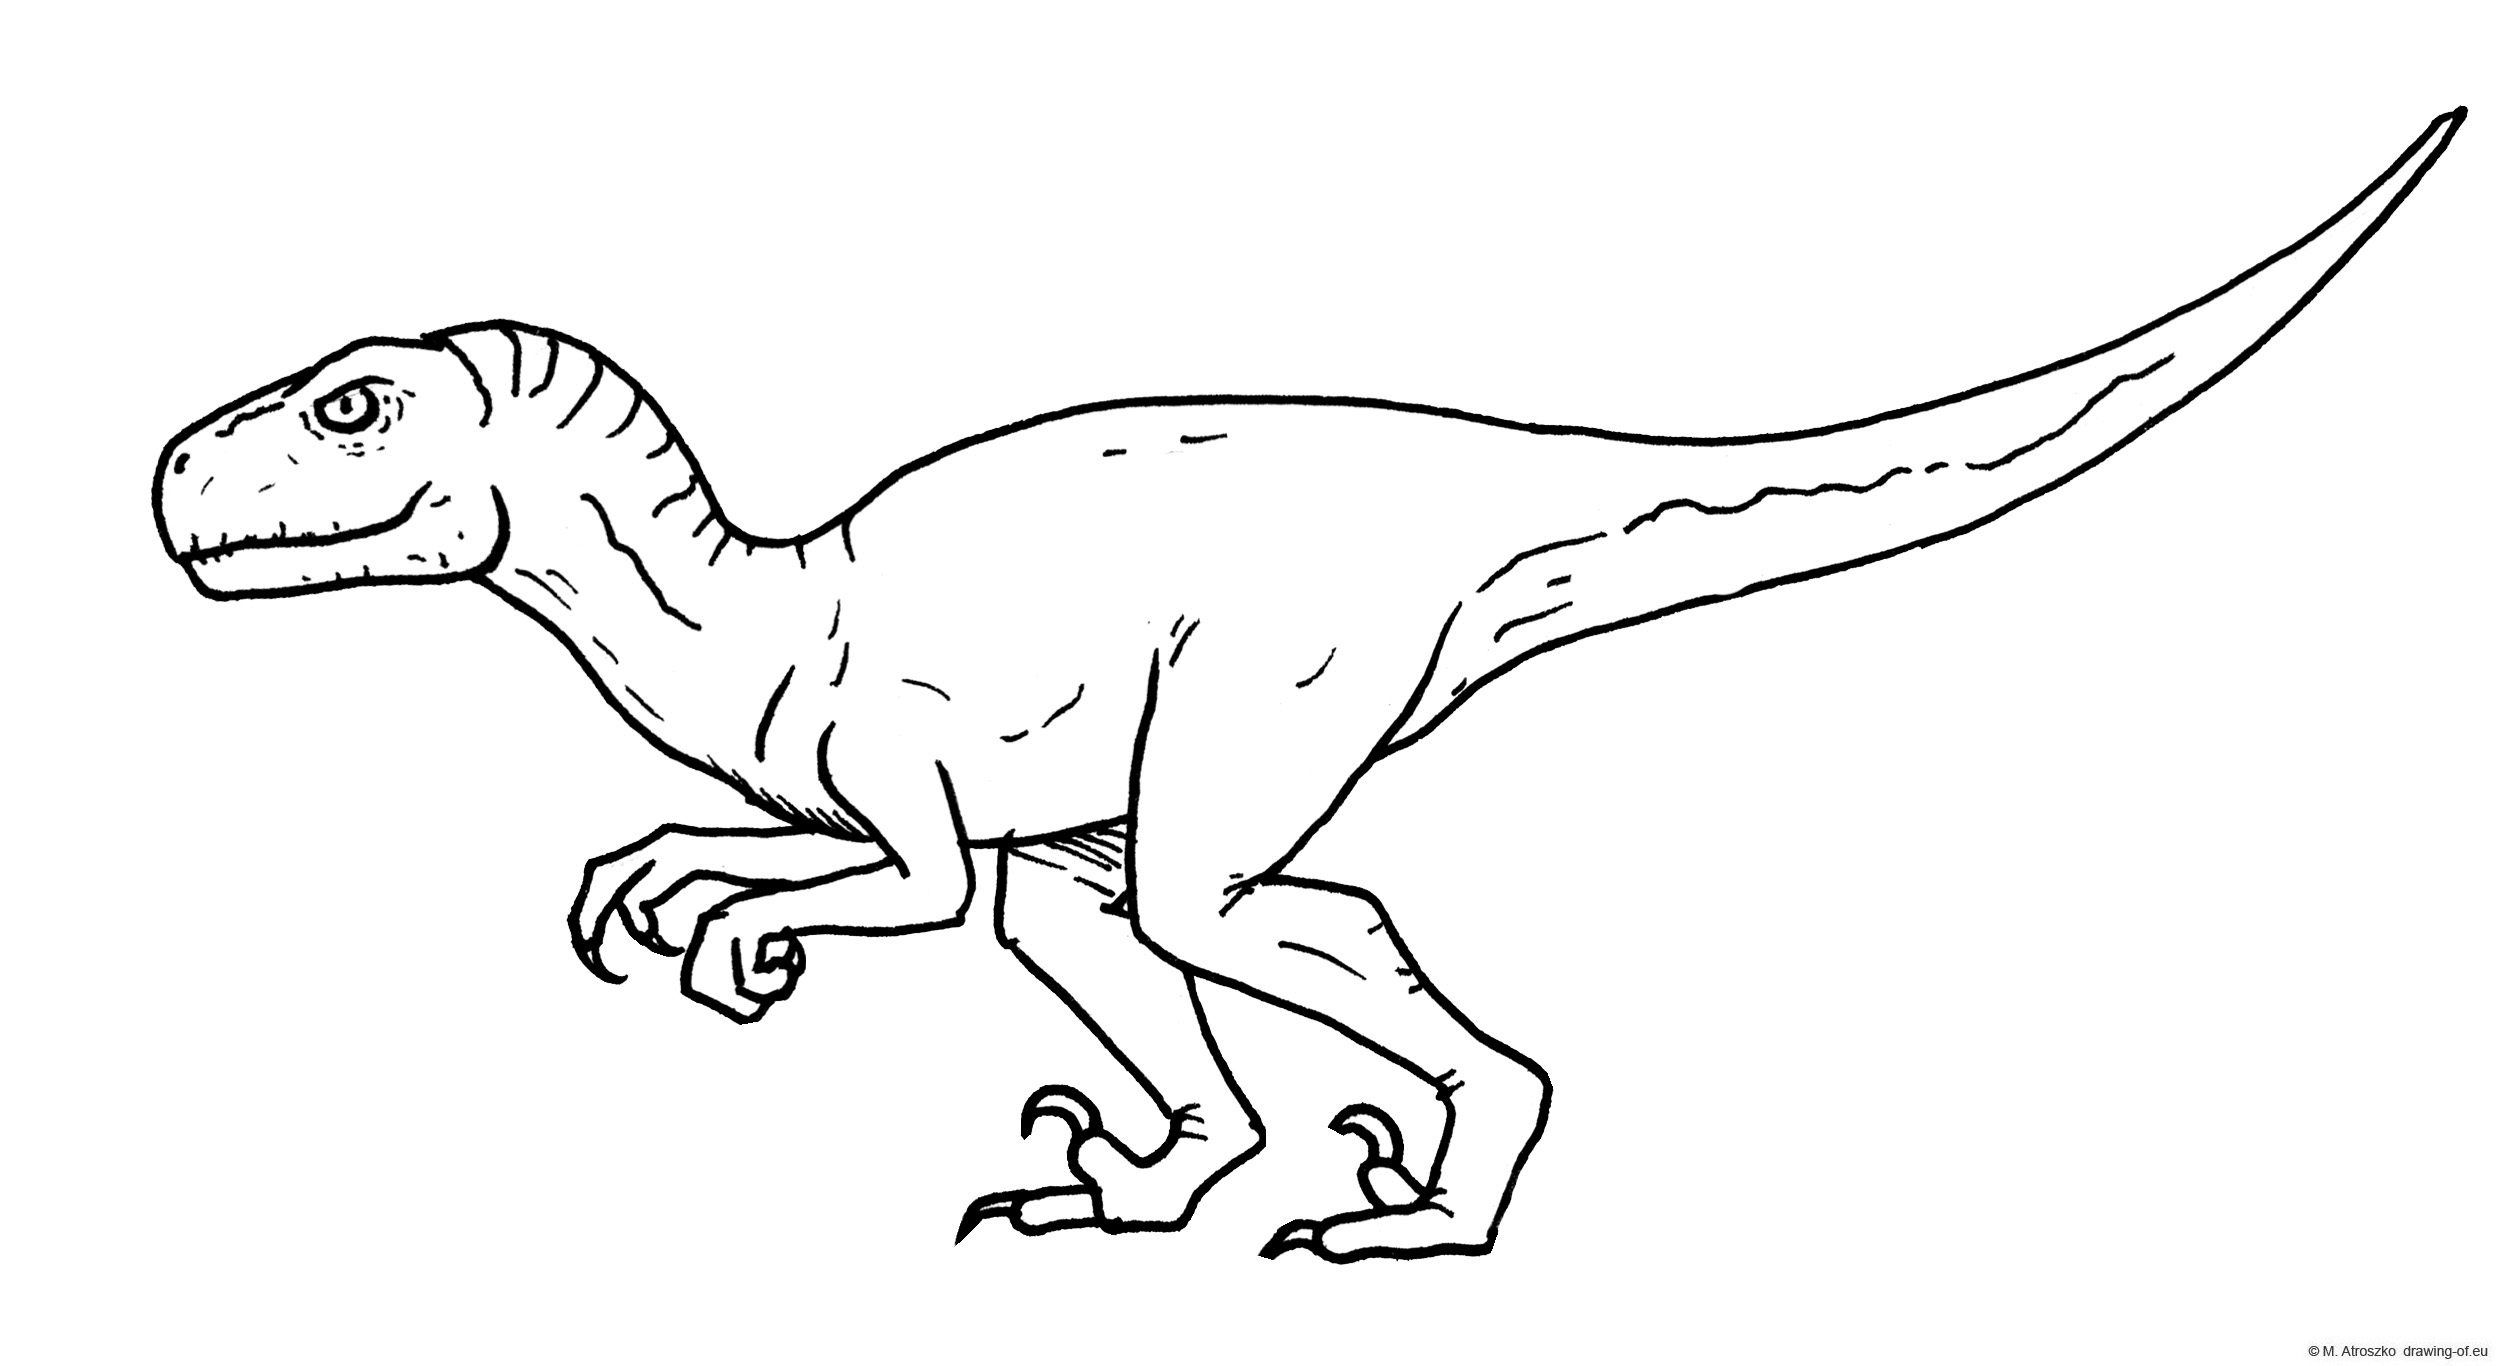 atrociraptor